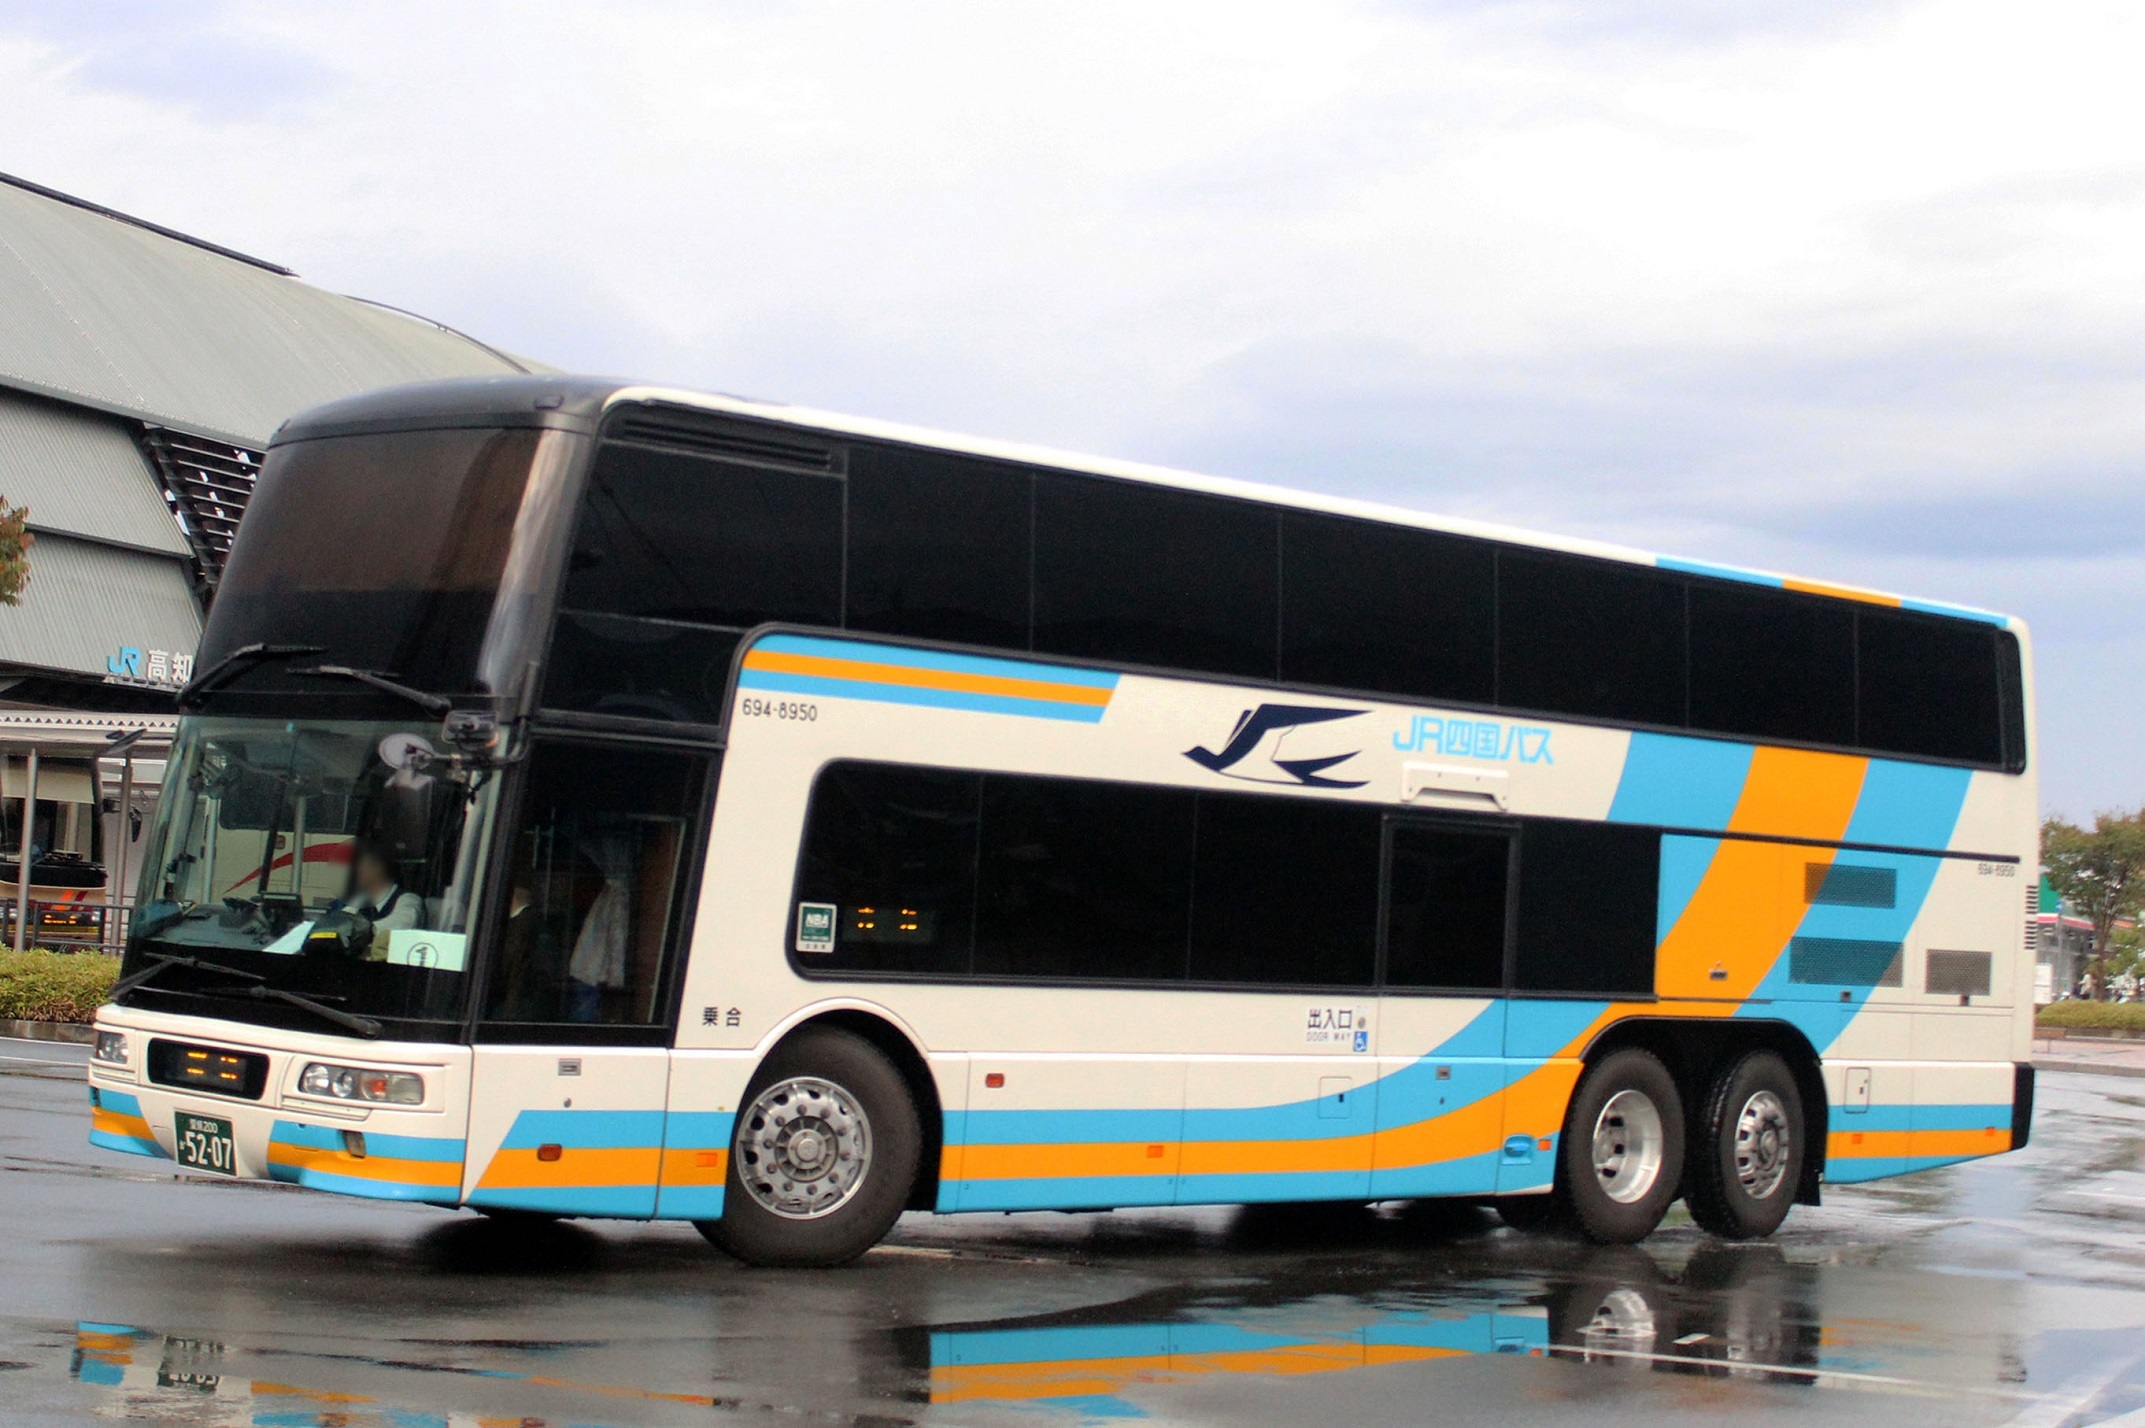 JR四国バス 694-8950